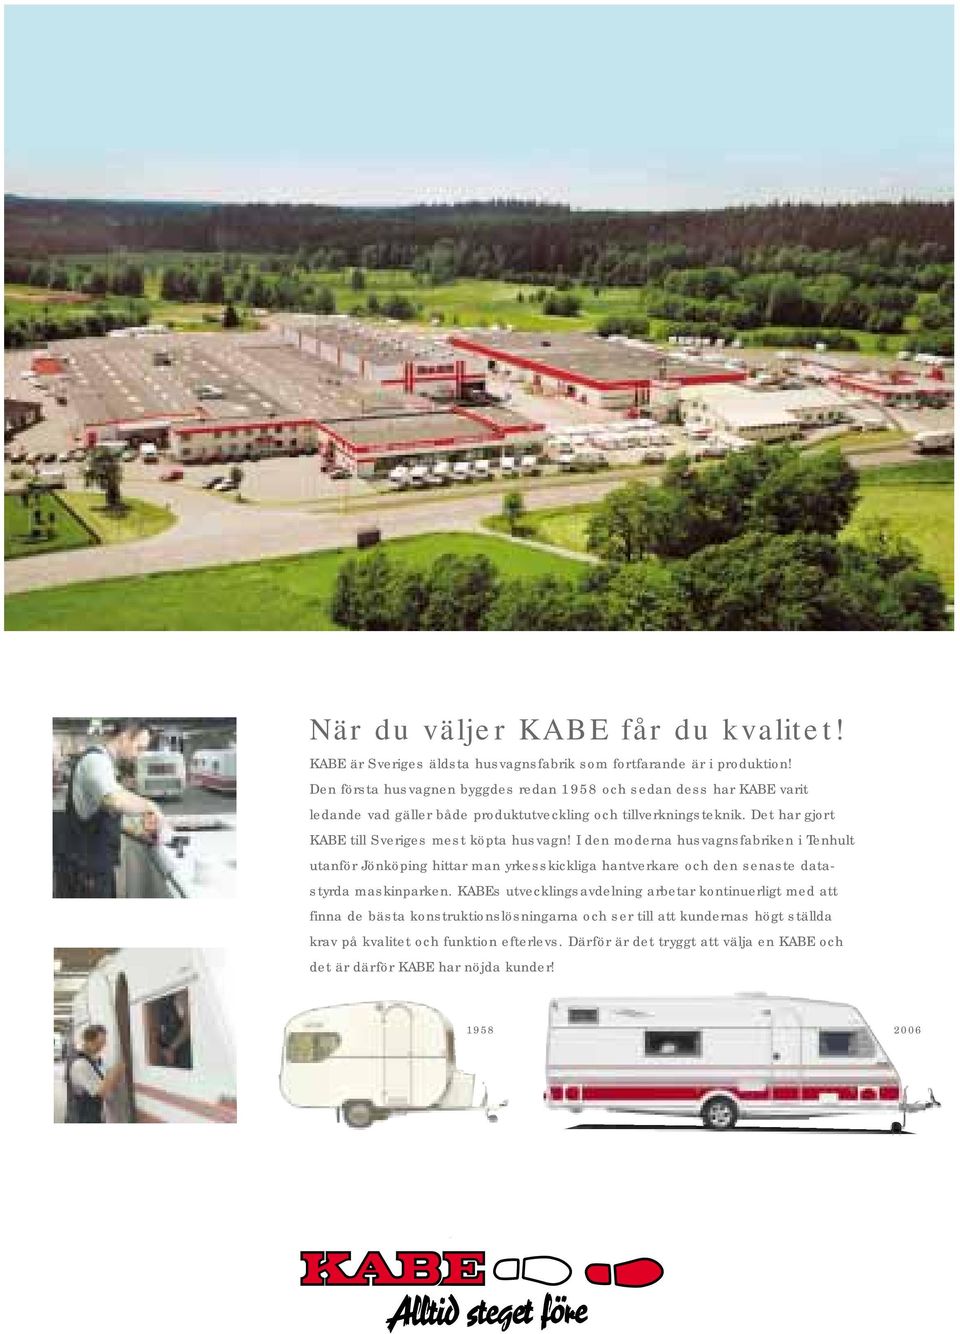 Det har gjort KABE till Sveriges mest köpta husvagn!